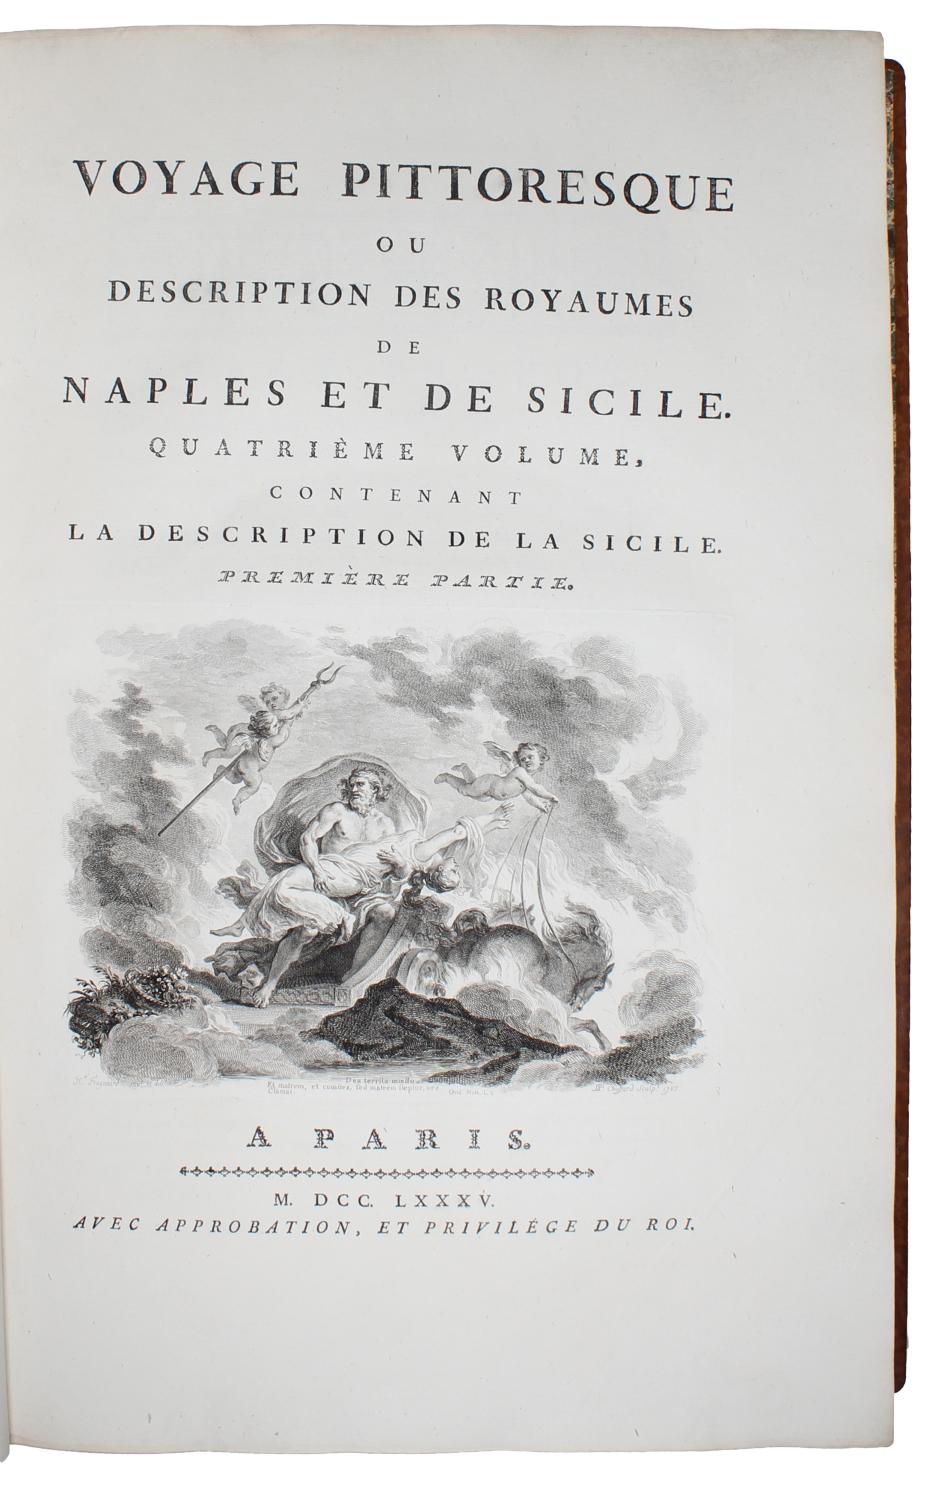 Le Vésuve, décrit par les contemporains du XVIIIe siècle - Page 7 22497910